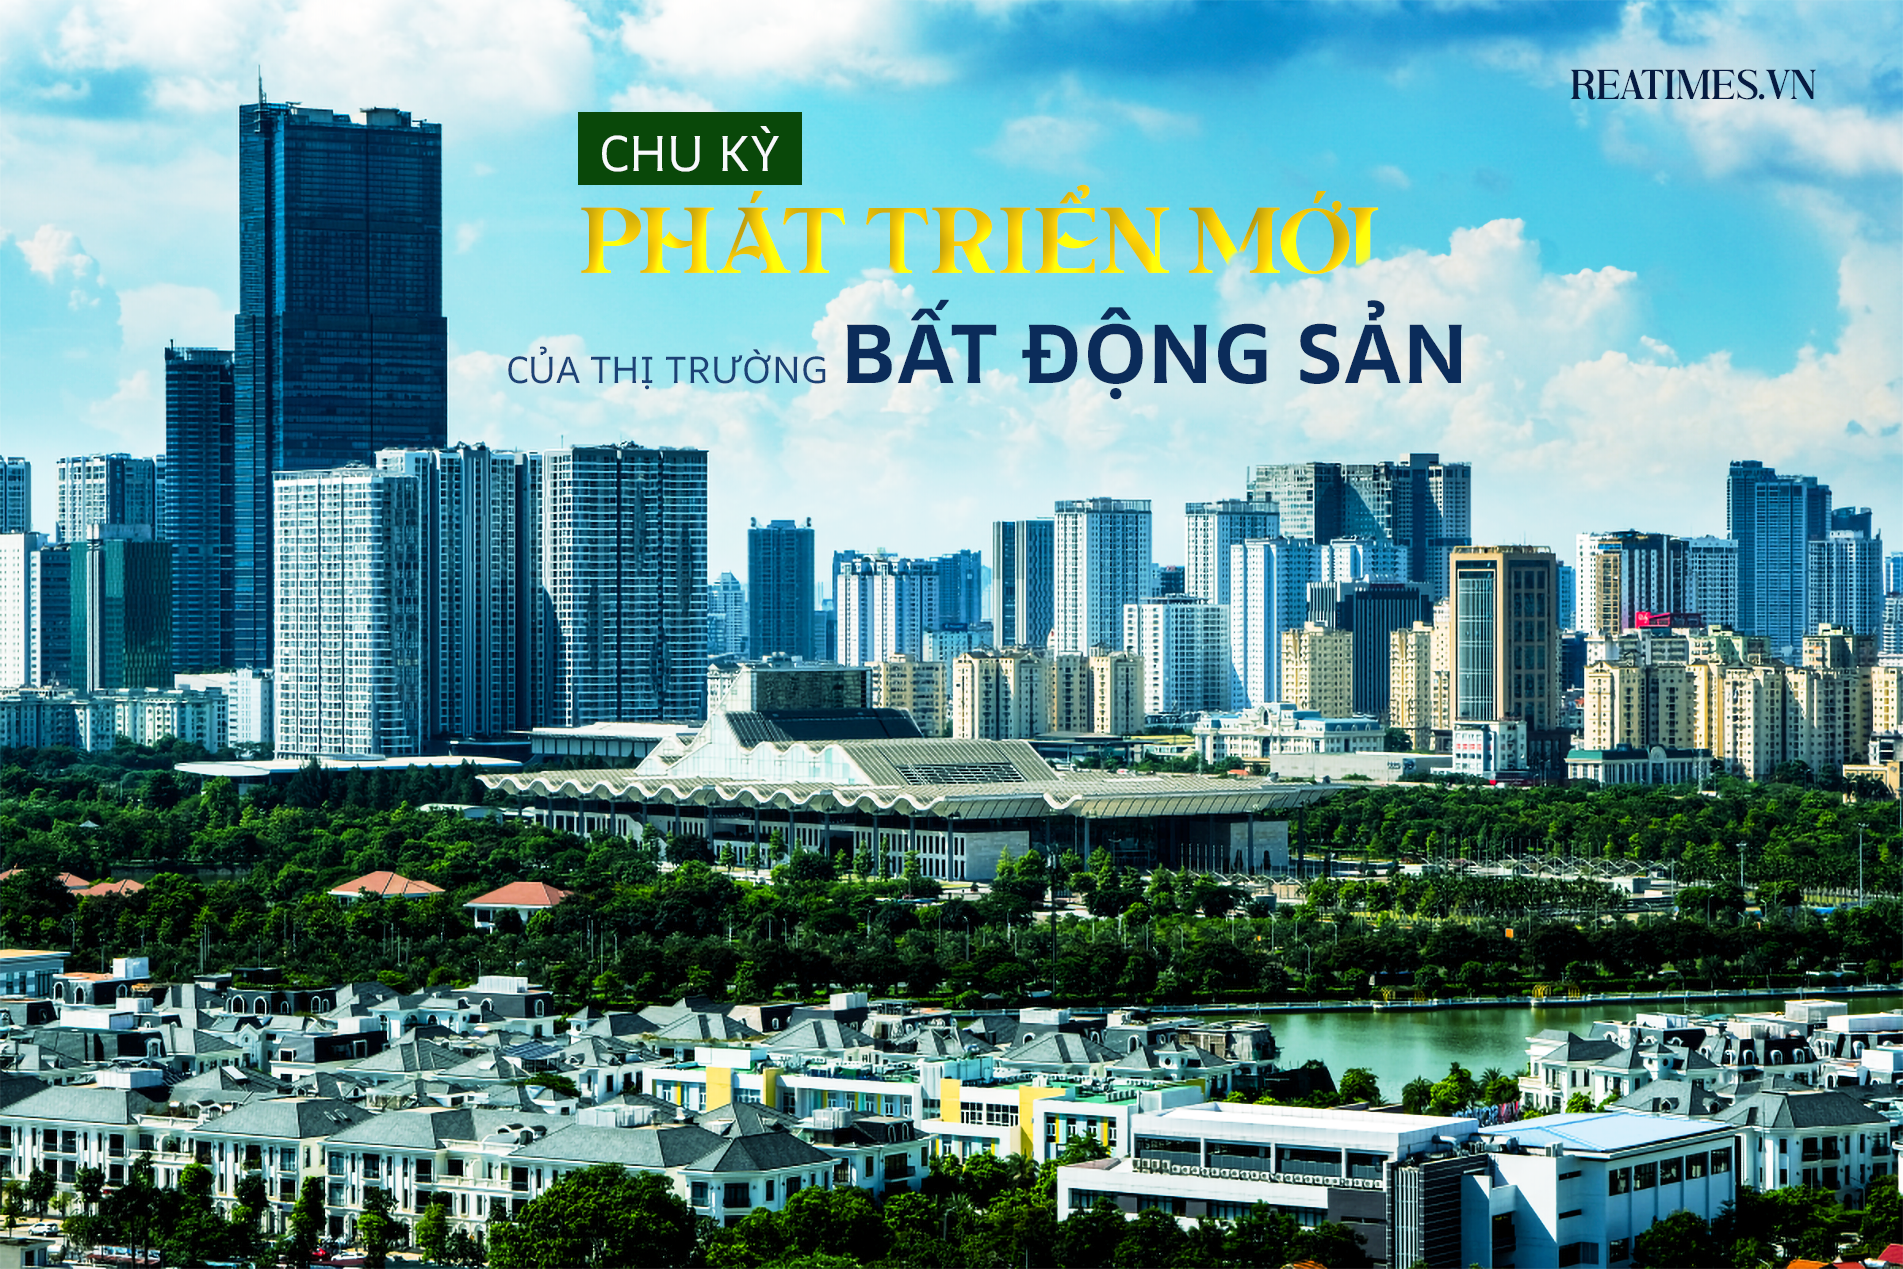 Thị trường bất động sản Việt Nam bước vào một chu kỳ phát triển mới?